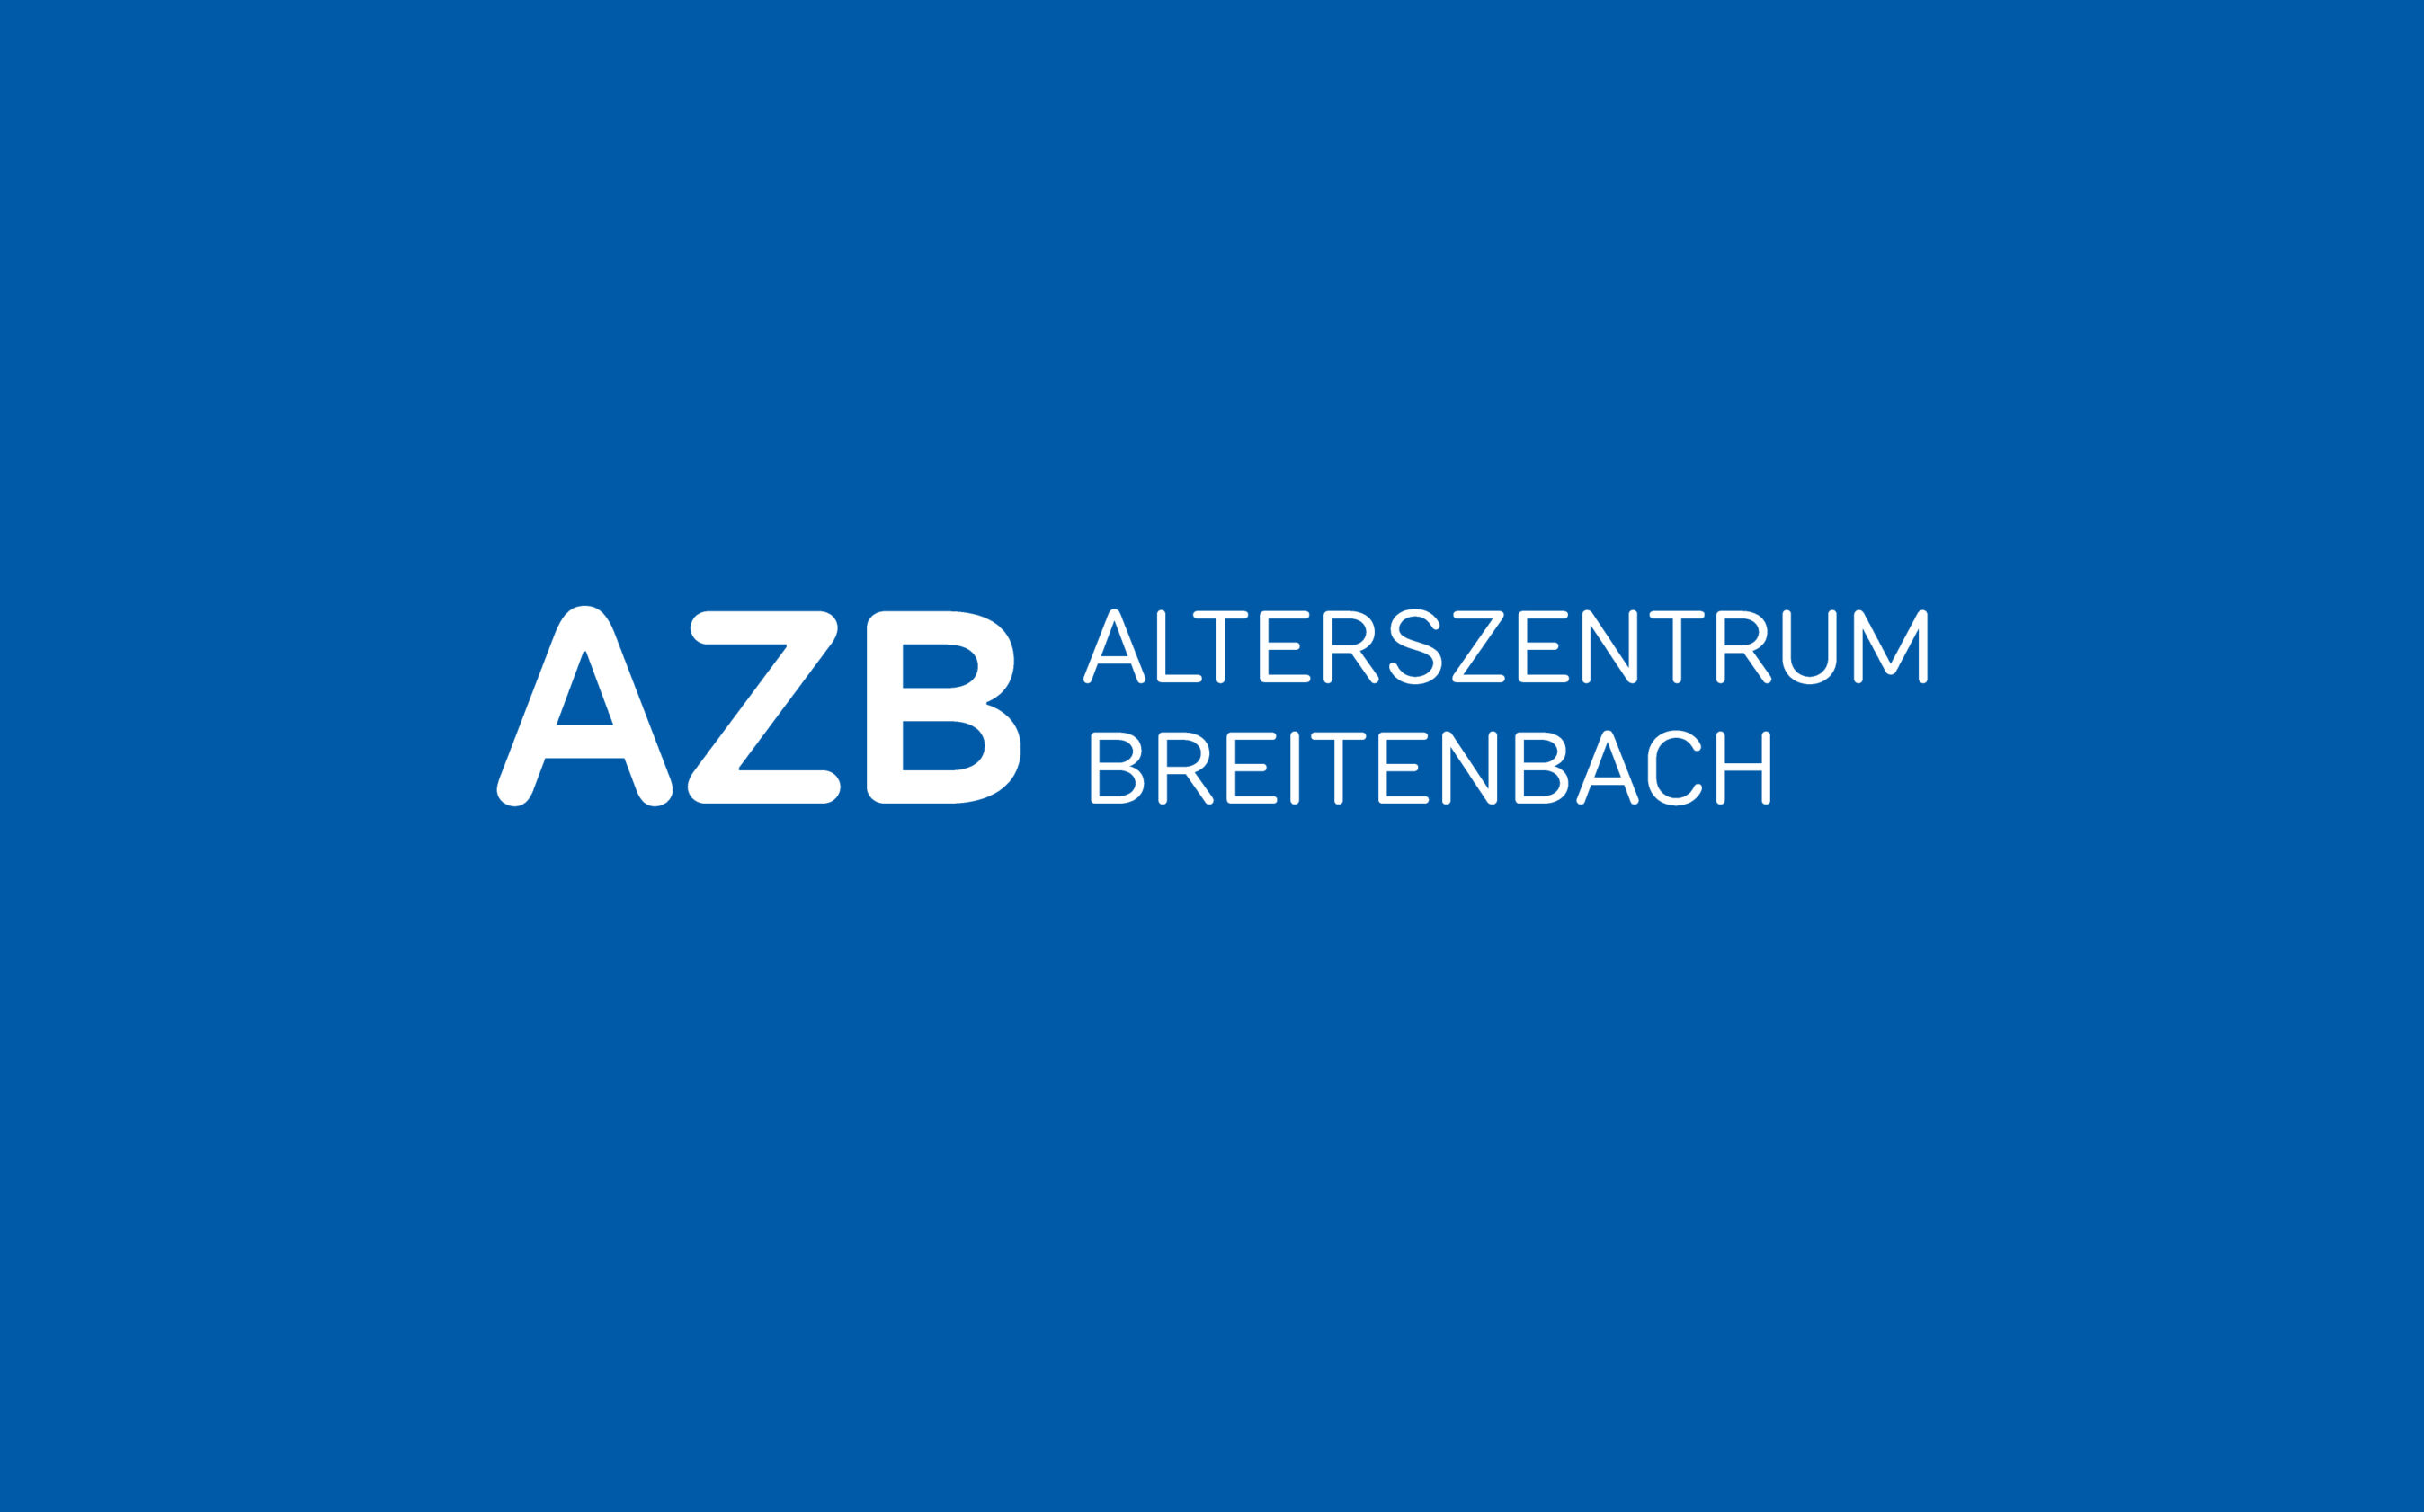 Logo-Design für das Alterszentrum Breitenbach. Weisse Schrift auf blauem Grund.